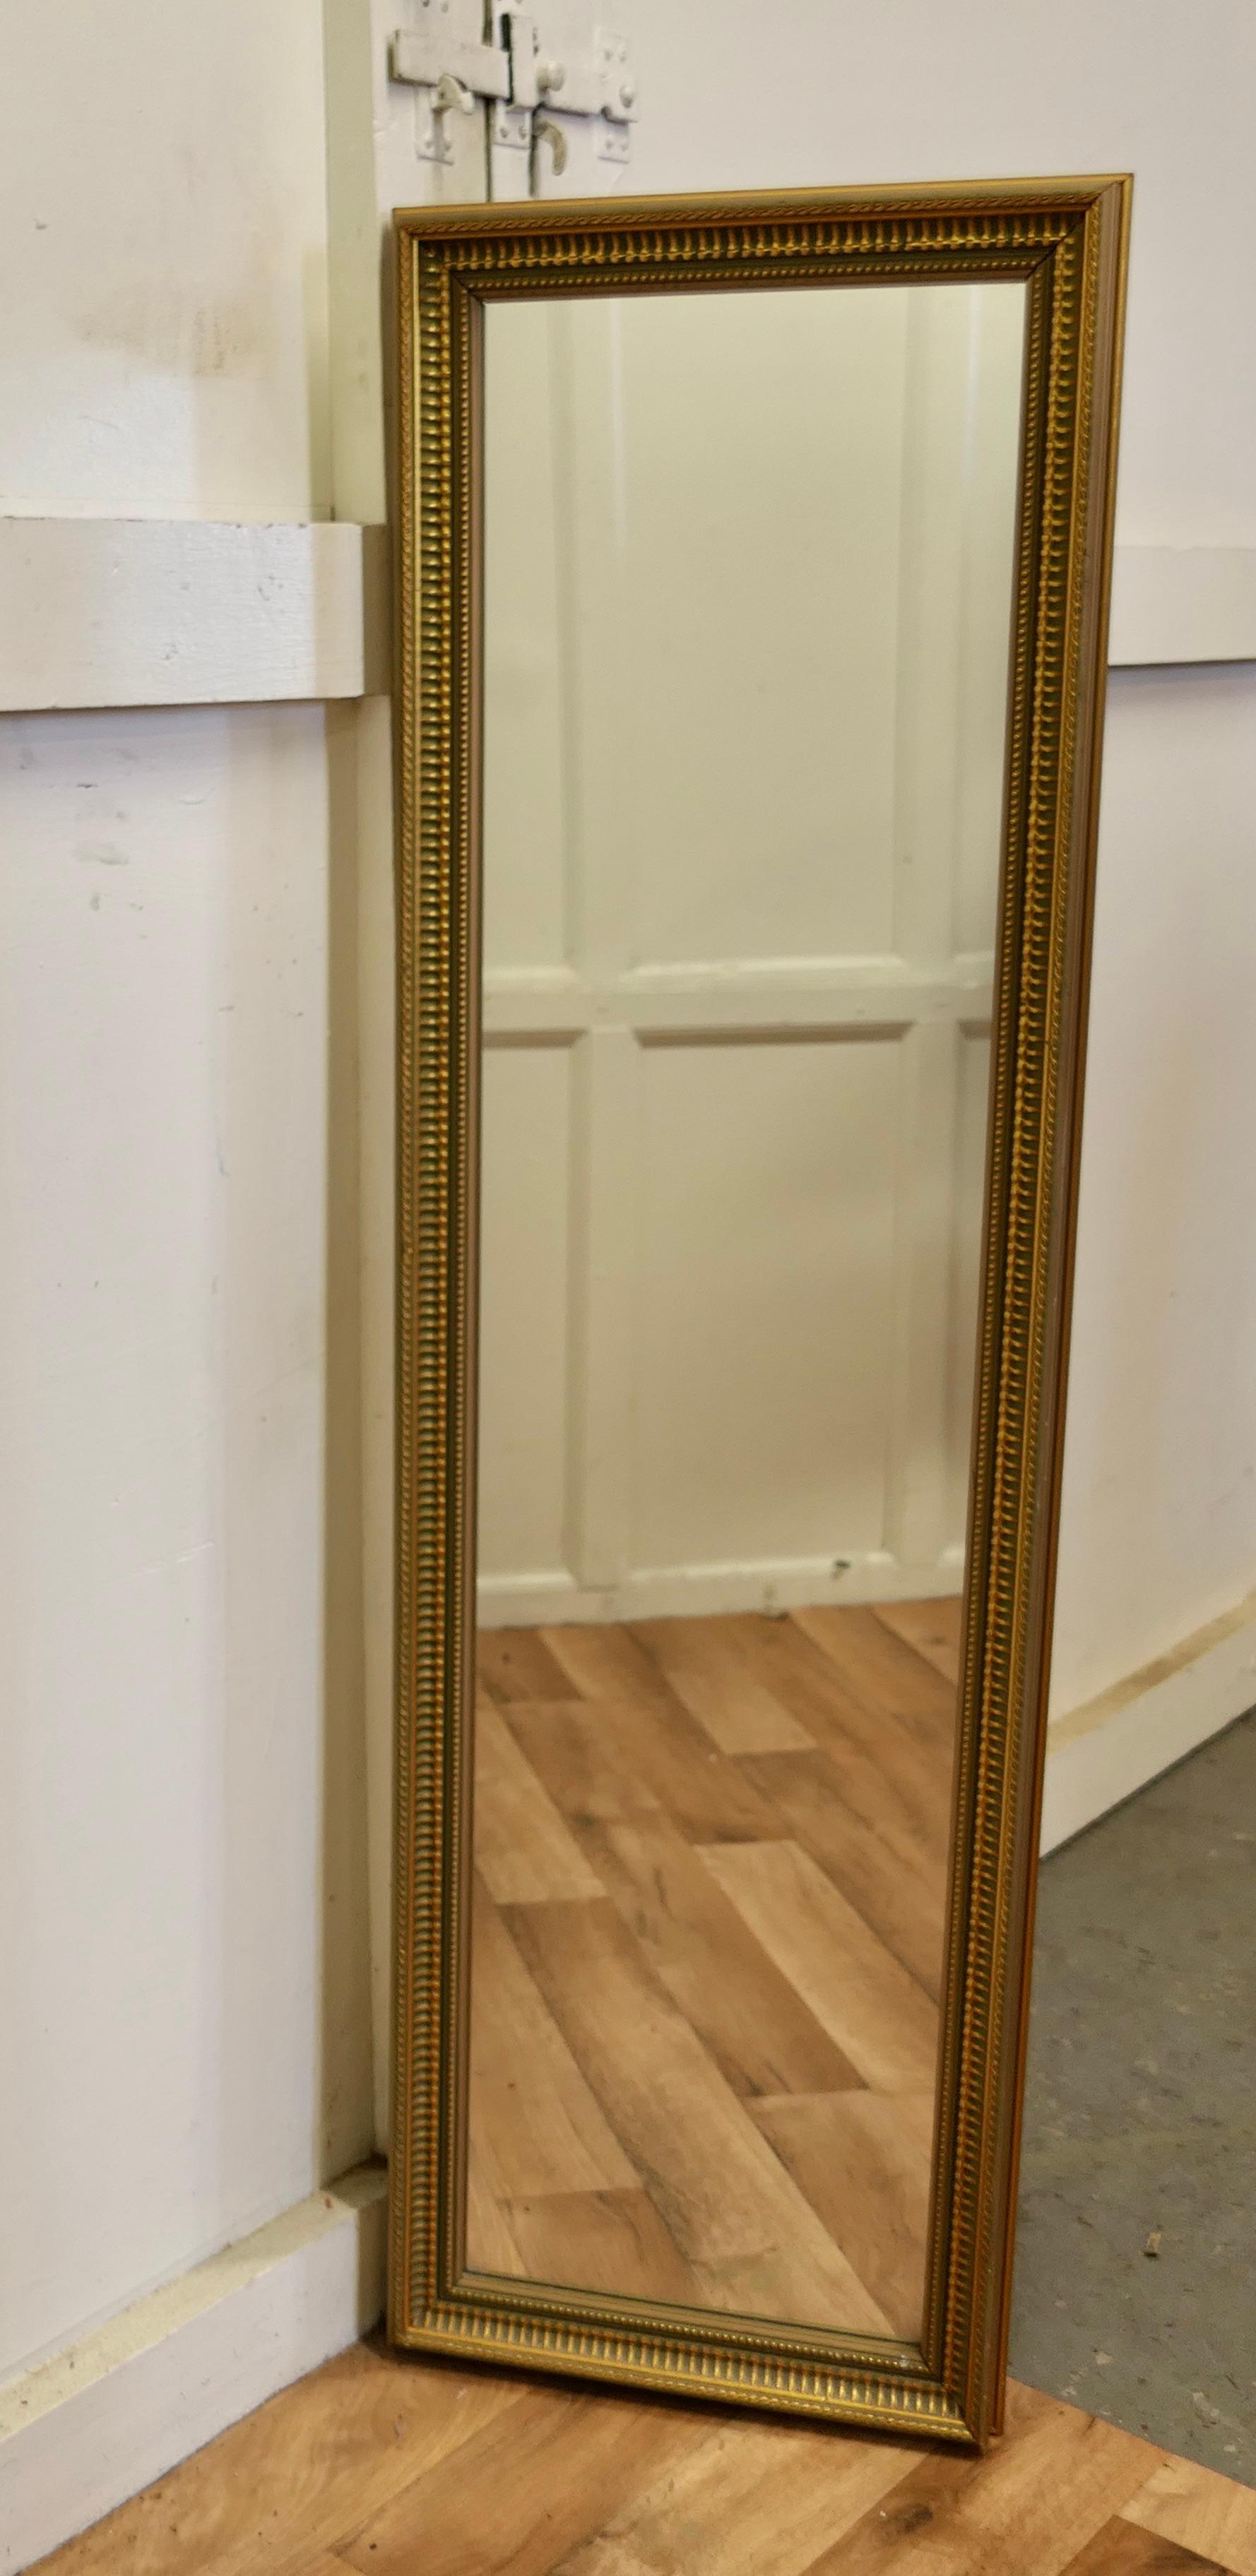 Ein dekorativer langer vergoldeter/grüner Ankleidespiegel

Ein reizvolles Stück, der Spiegel hat einen 2 